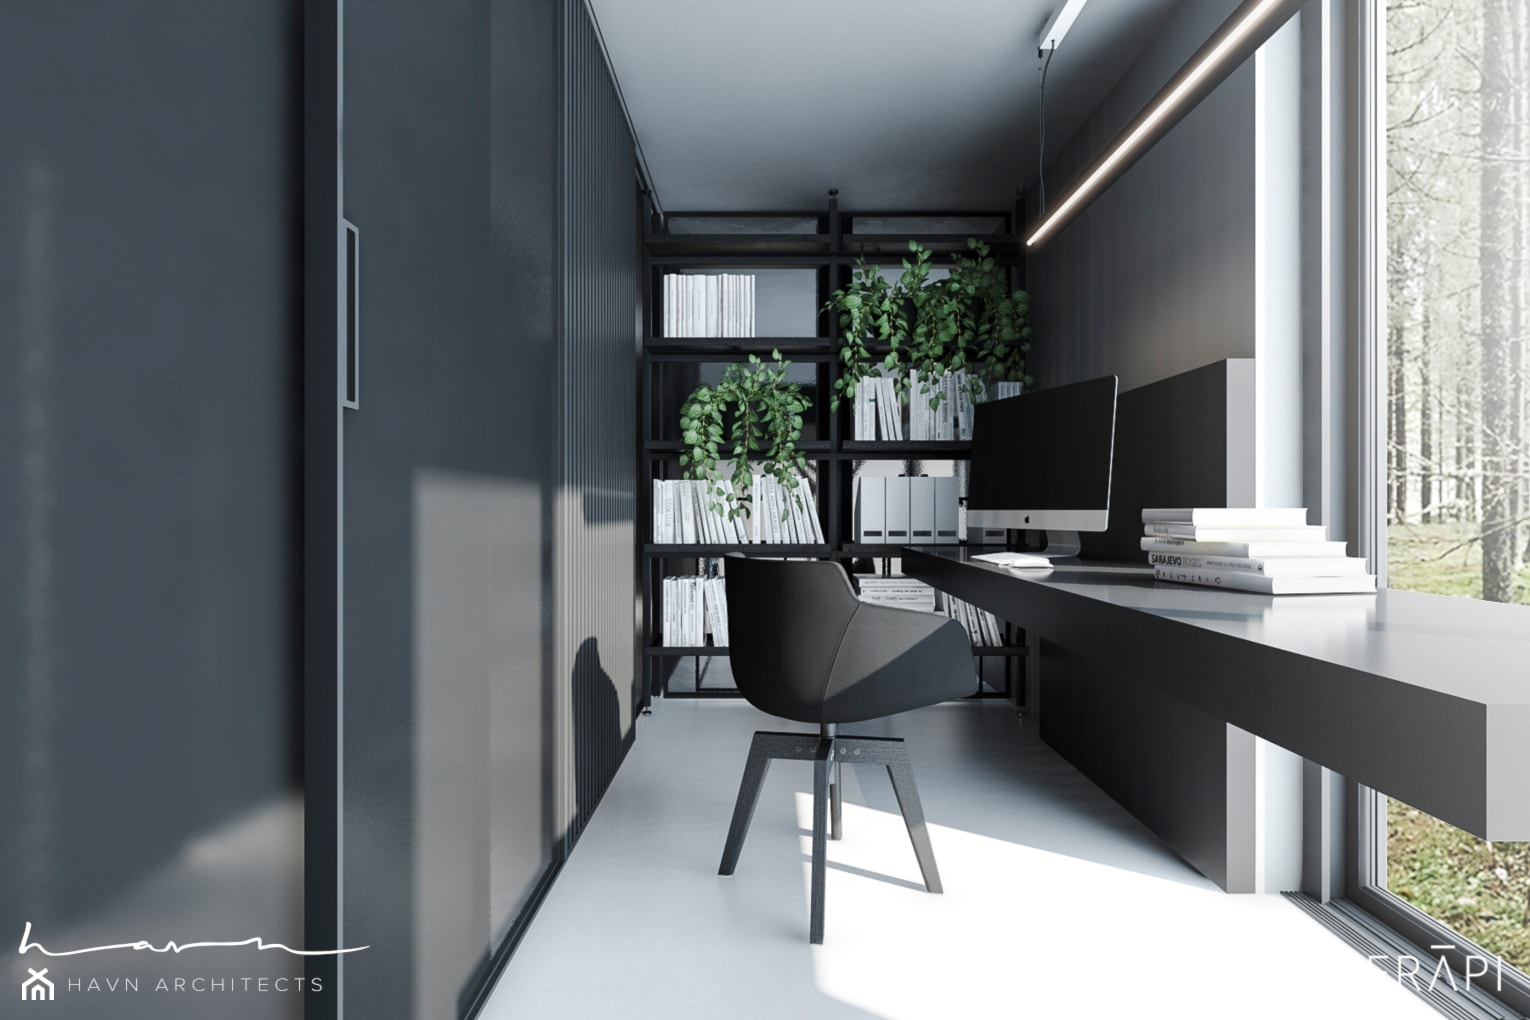 Projekt domu / Sztokholm - Małe w osobnym pomieszczeniu z zabudowanym biurkiem szare biuro, styl minimalistyczny - zdjęcie od Merapi Architects - Homebook